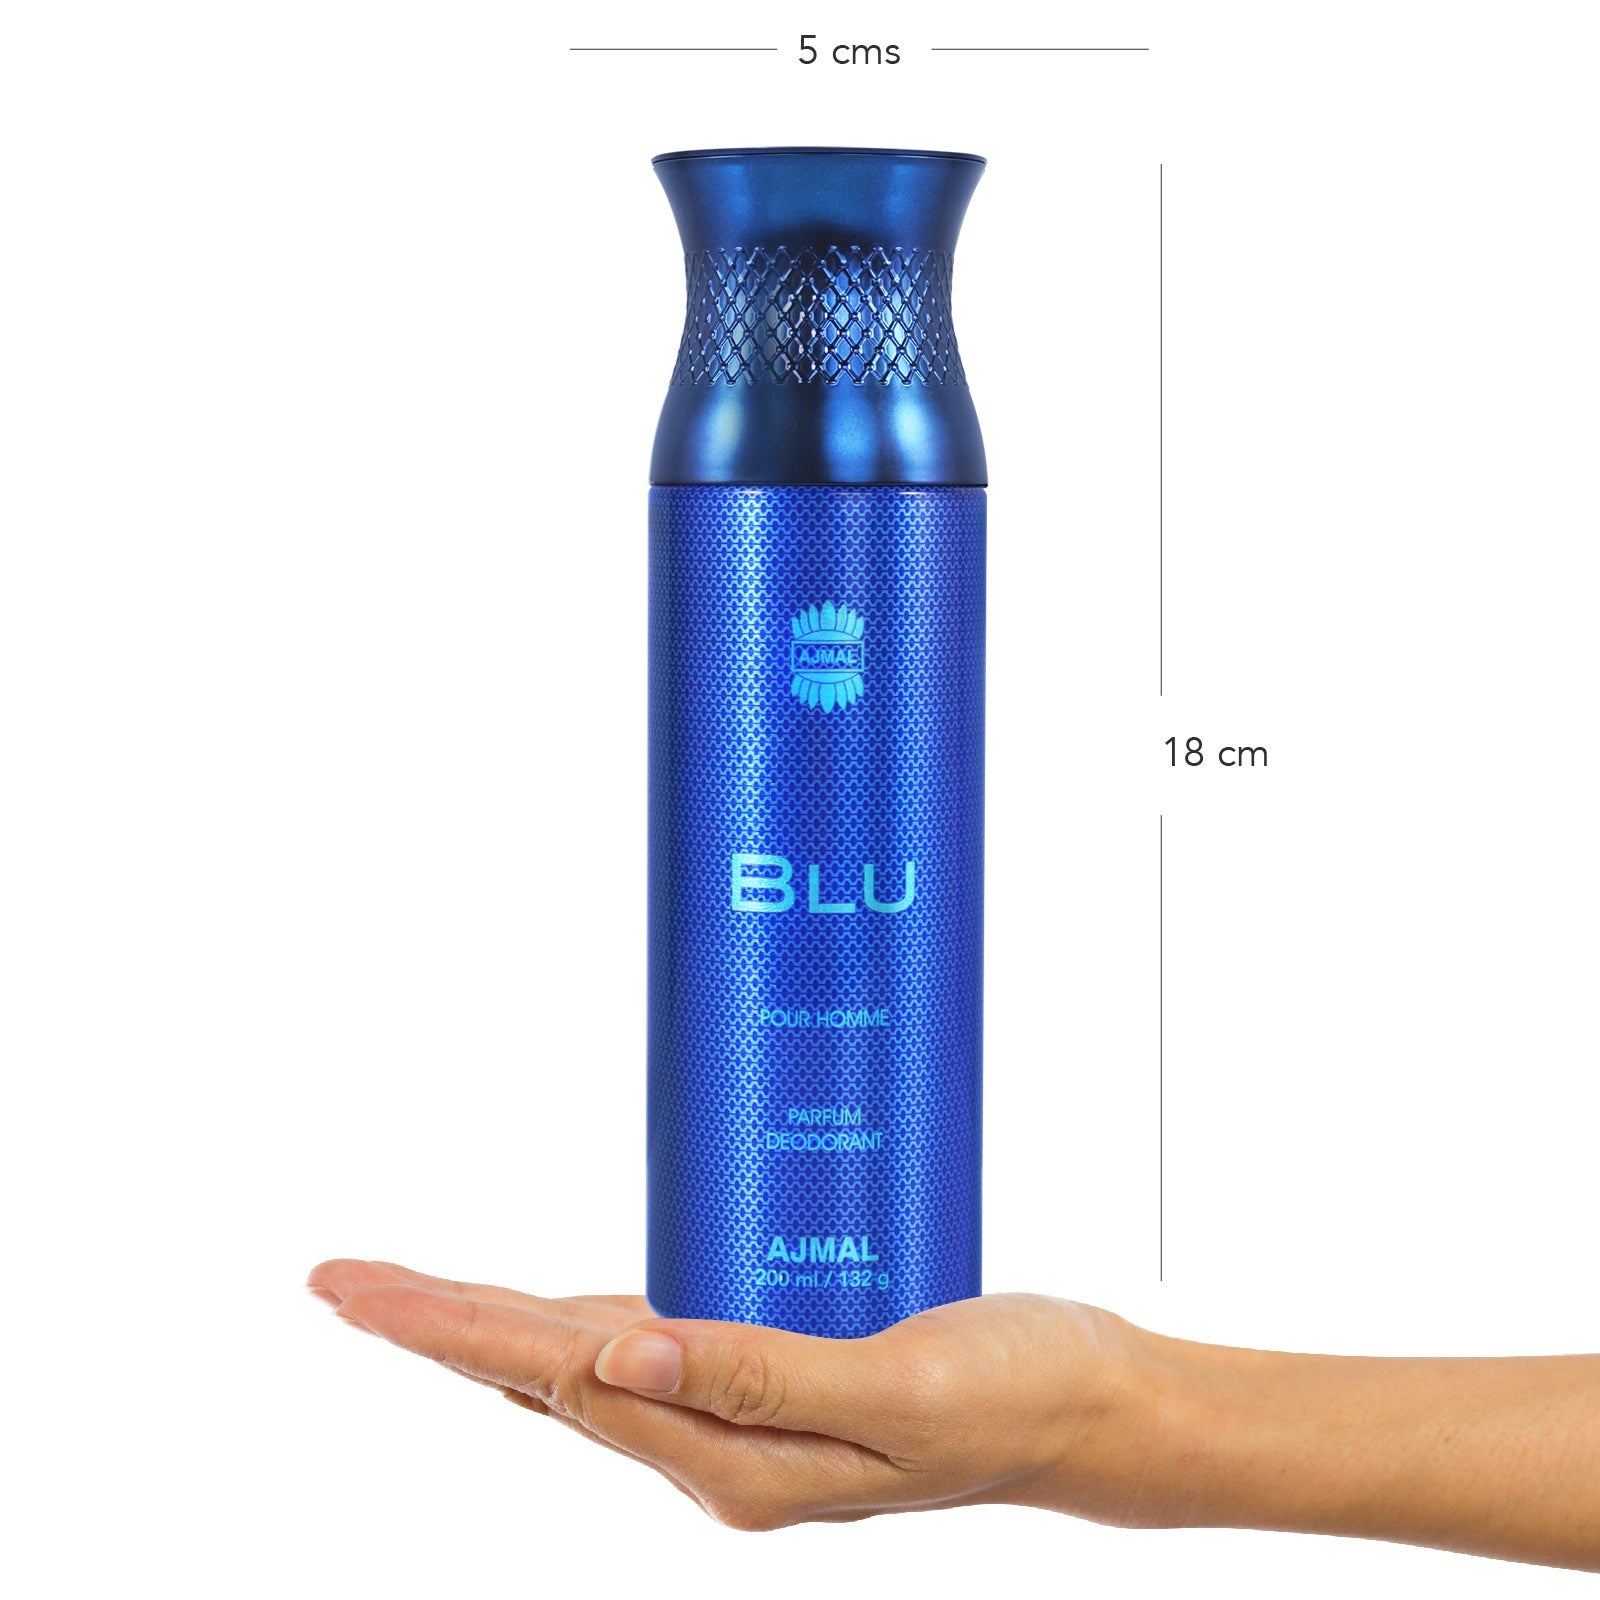 Blu Perfume Deodorant 200ml For Men